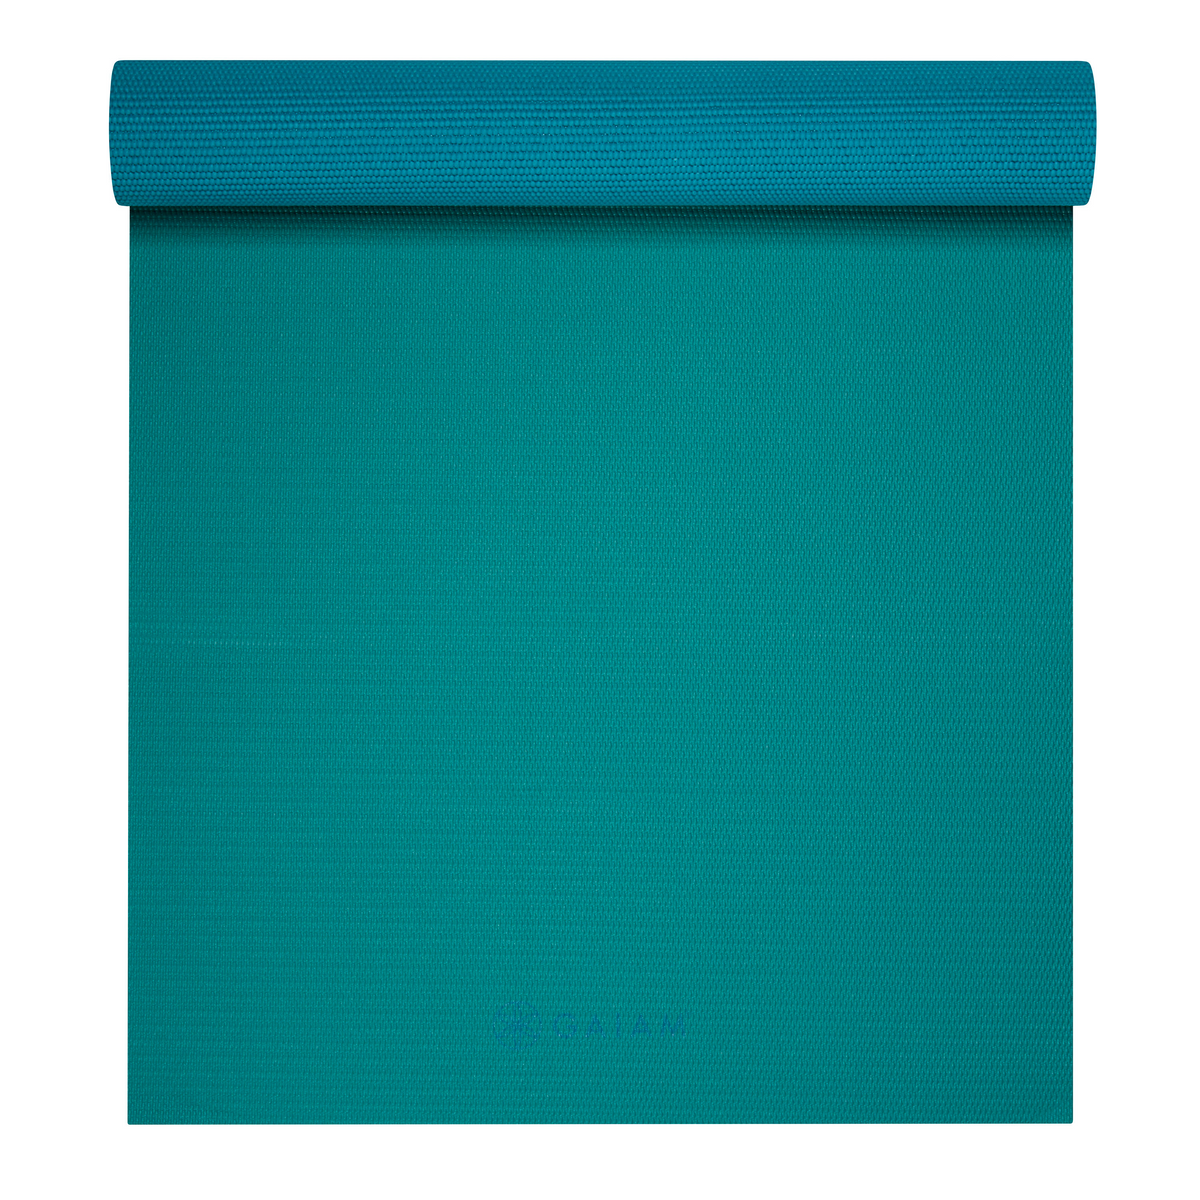  Turquoise Sea Premium 2-Color Yoga Mat (6mm)